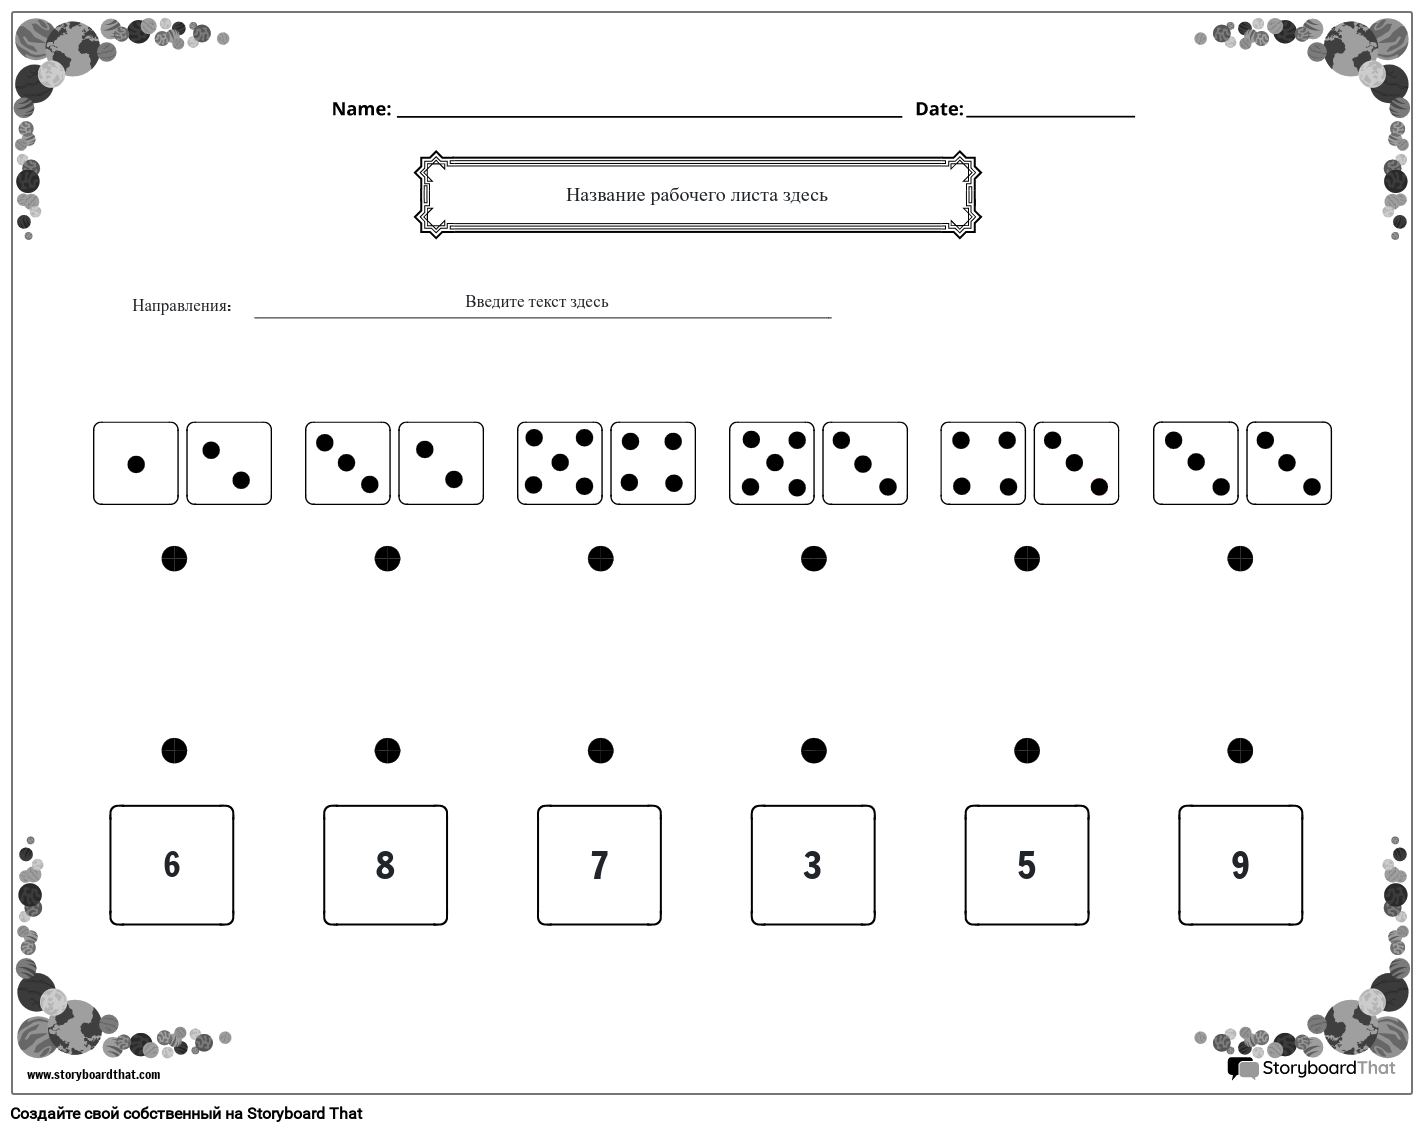 Таблица подбора и подсчета штампов (черно-белая)